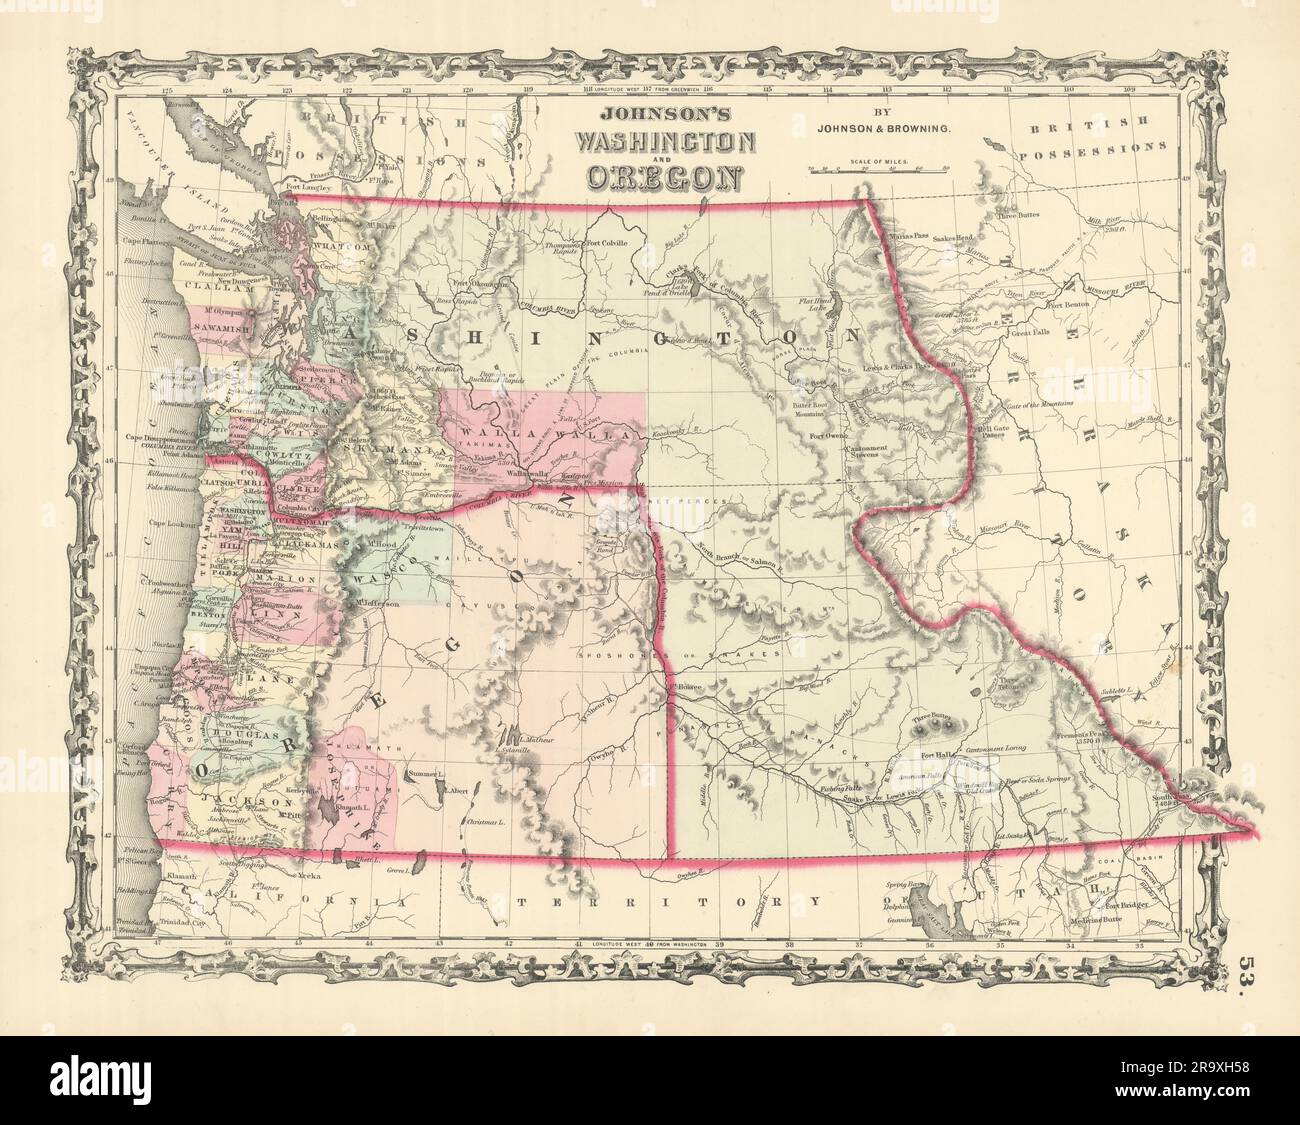 Johnson's Washington [Territory] and Oregon. Idaho & Montana. Counties 1861 map Stock Photo